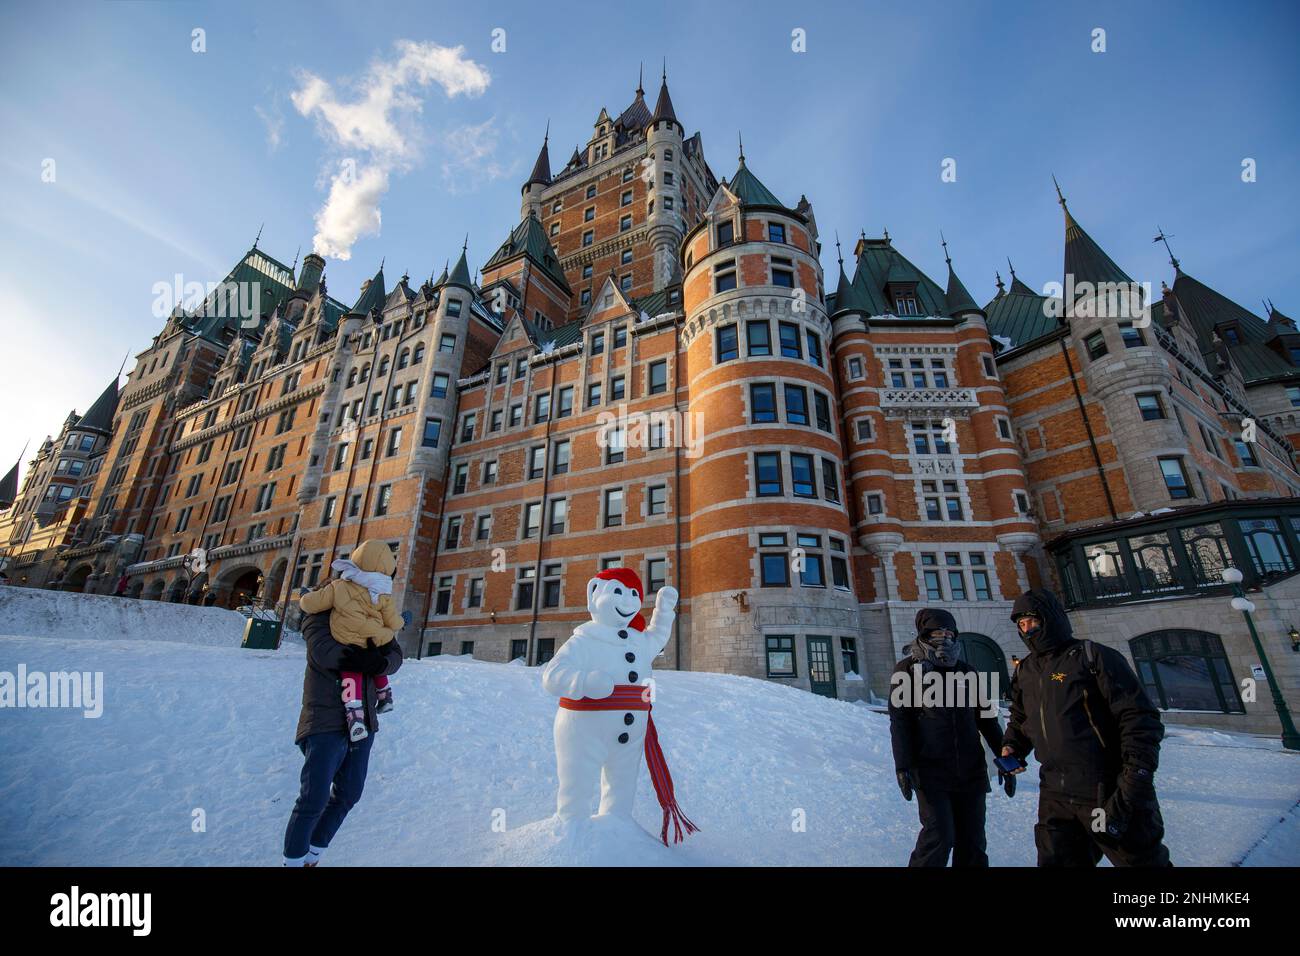 Quebec, Kanada : Dies ist der berühmte König des Winterkarnevals von Quebec, ein Schneemannsmaskottchen, das von allen geliebt wird und Bonhomme Carnaval heißt. Stockfoto